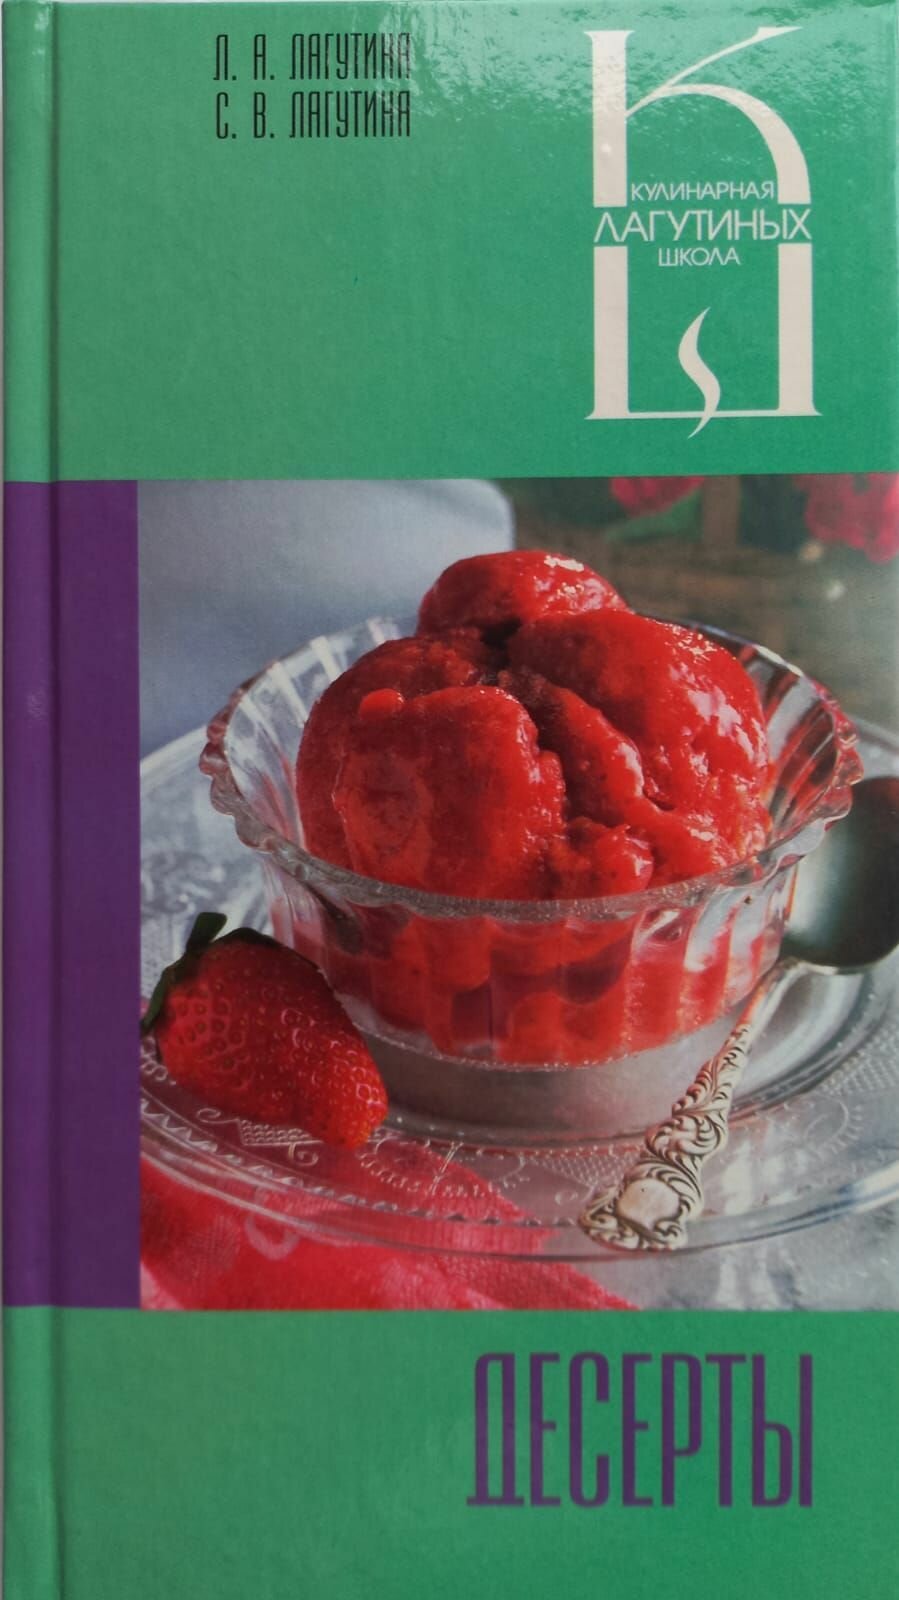 Десерты: сборник кулинарных рецептов - фото №2